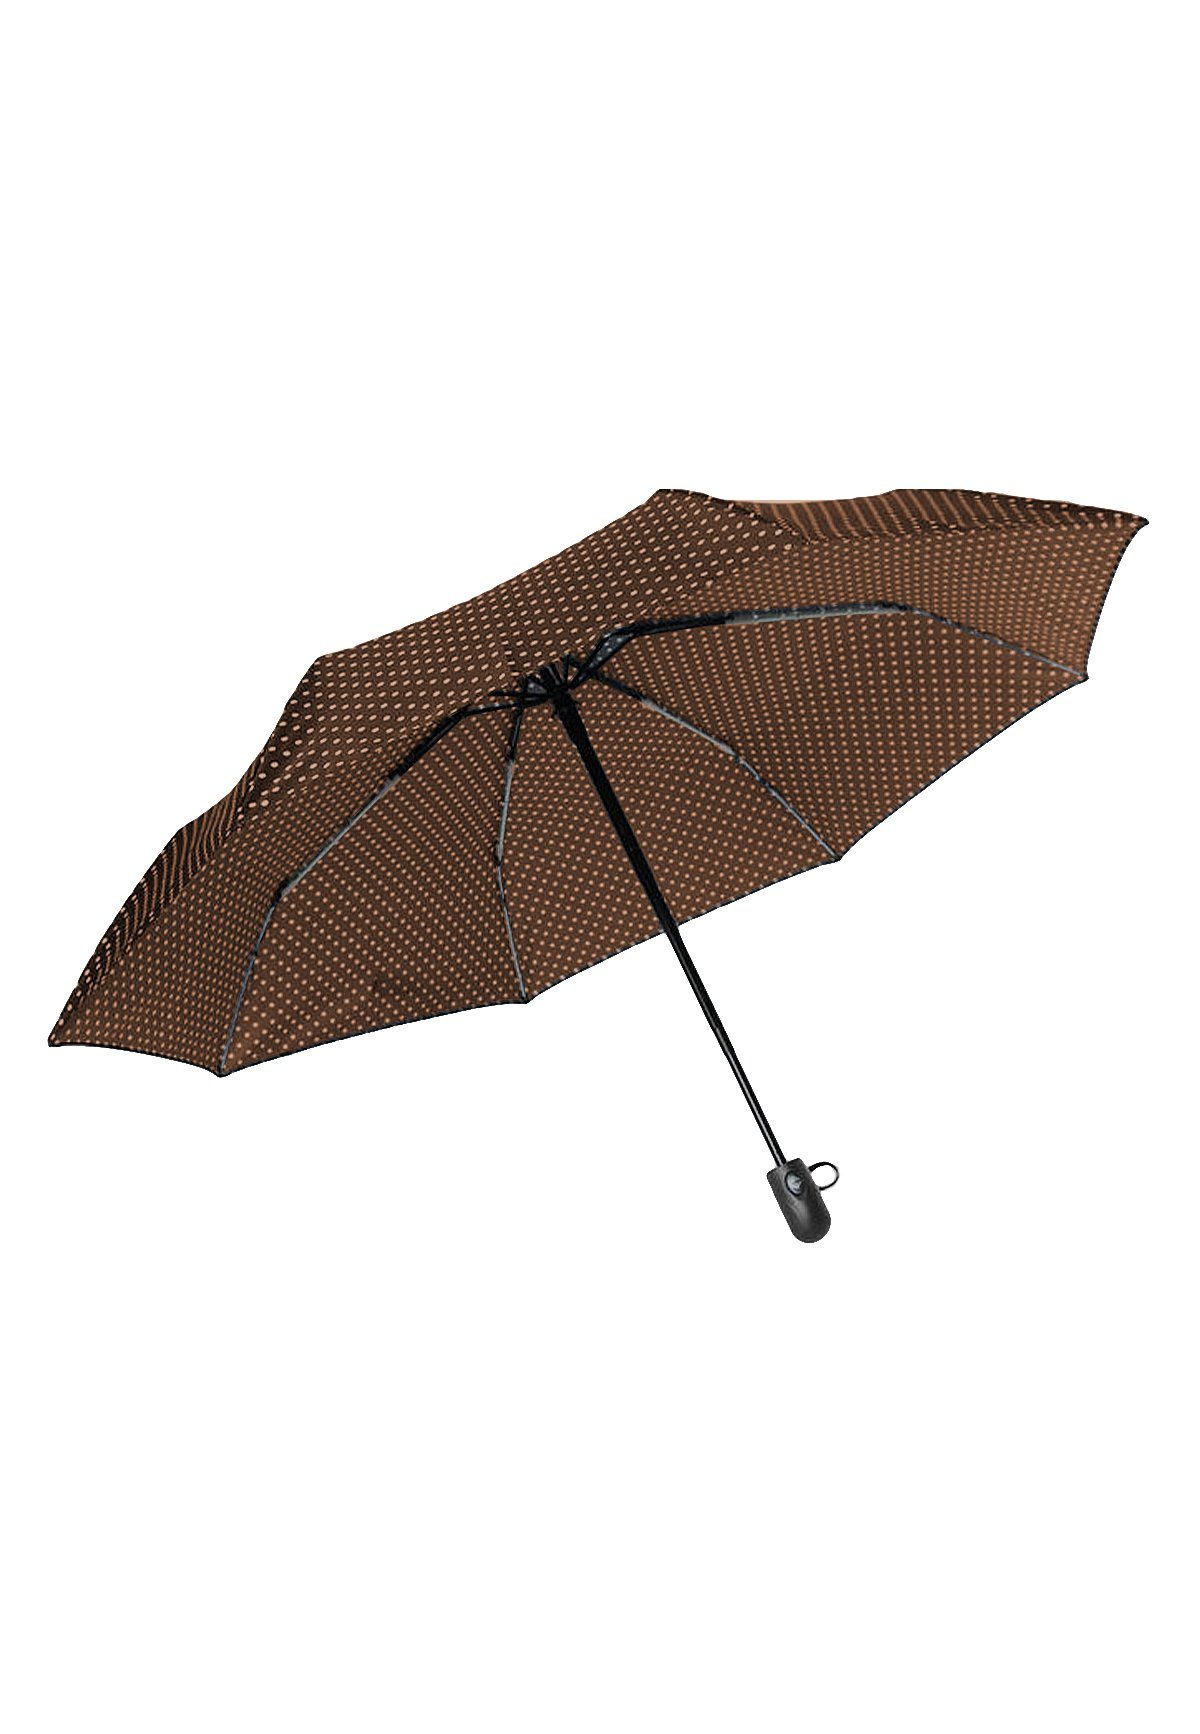 ANELY Taschenregenschirm Automatik 4686 Regenschirm, Braun Basic in